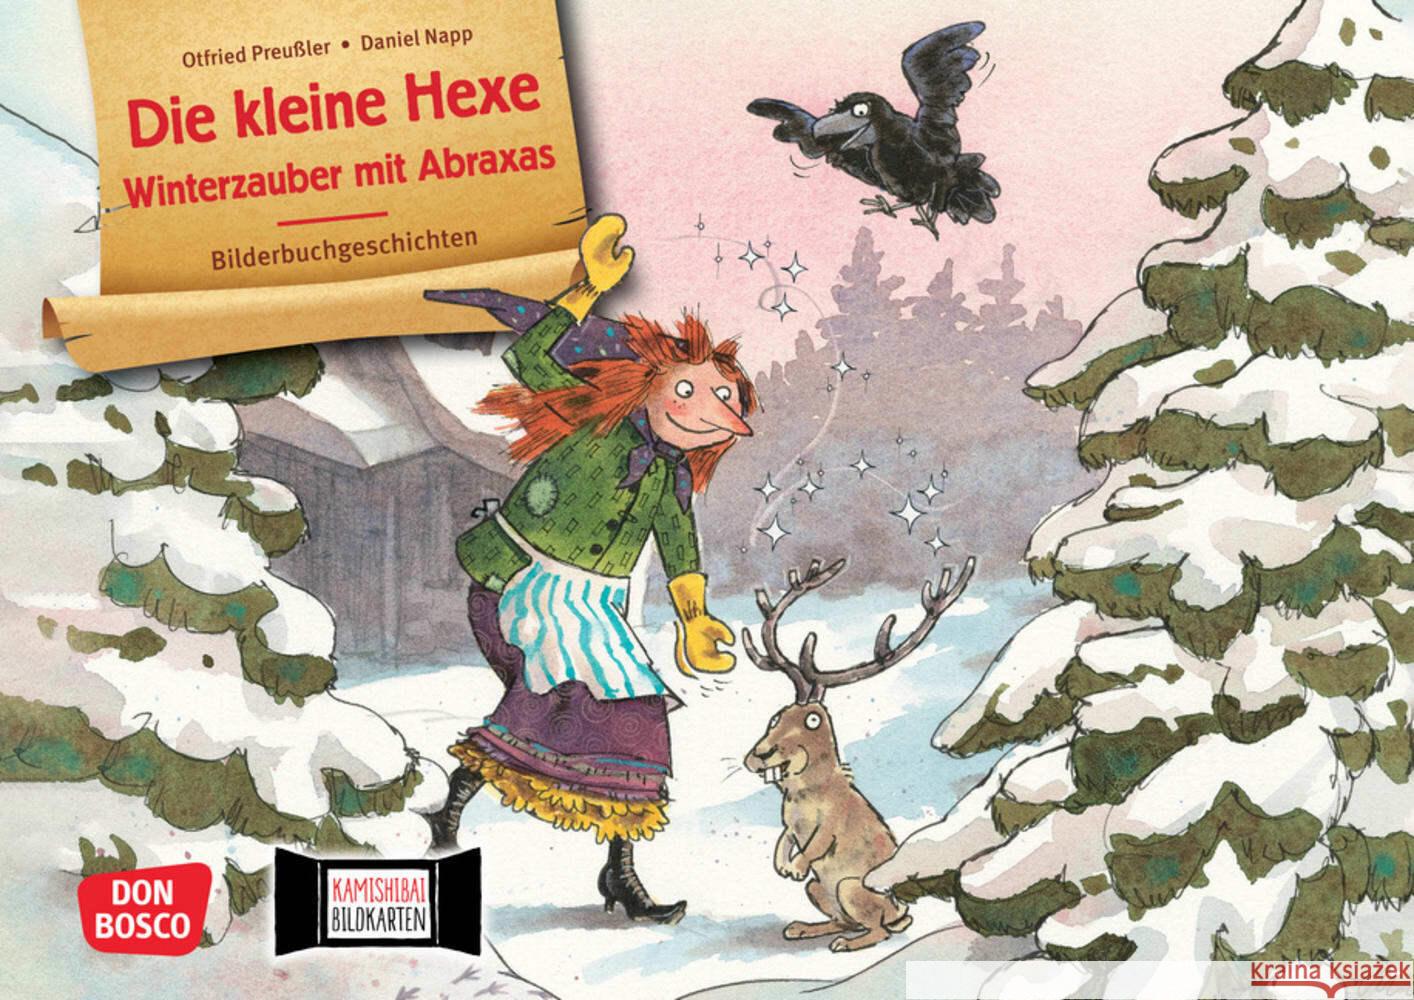 Die kleine Hexe - Winterzauber mit Abraxas. Kamishibai Bildkartenset Preußler, Otfried 4260179517990